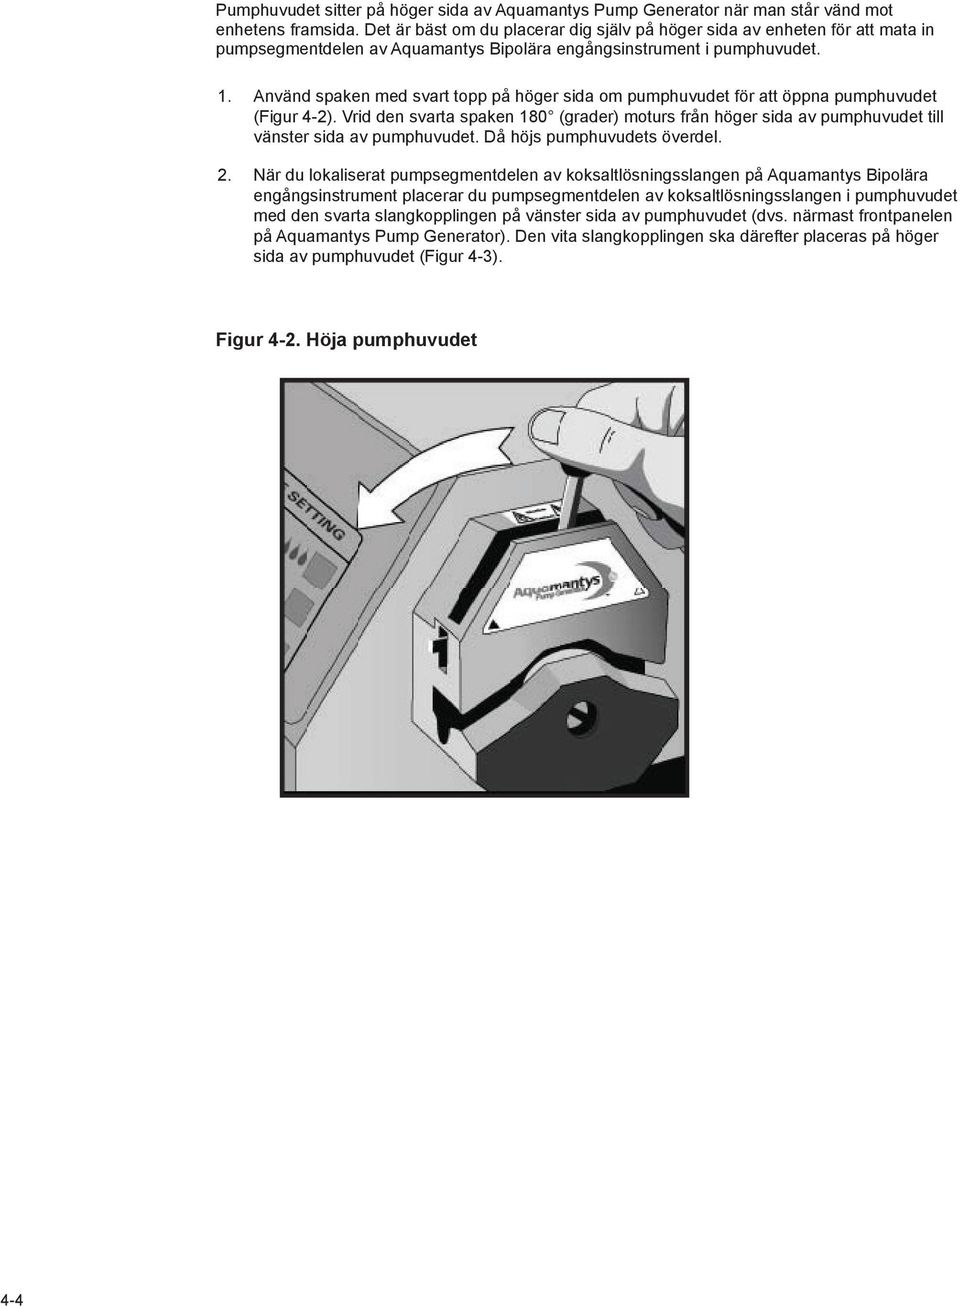 Använd spaken med svart topp på höger sida om pumphuvudet för att öppna pumphuvudet (Figur 4-2).